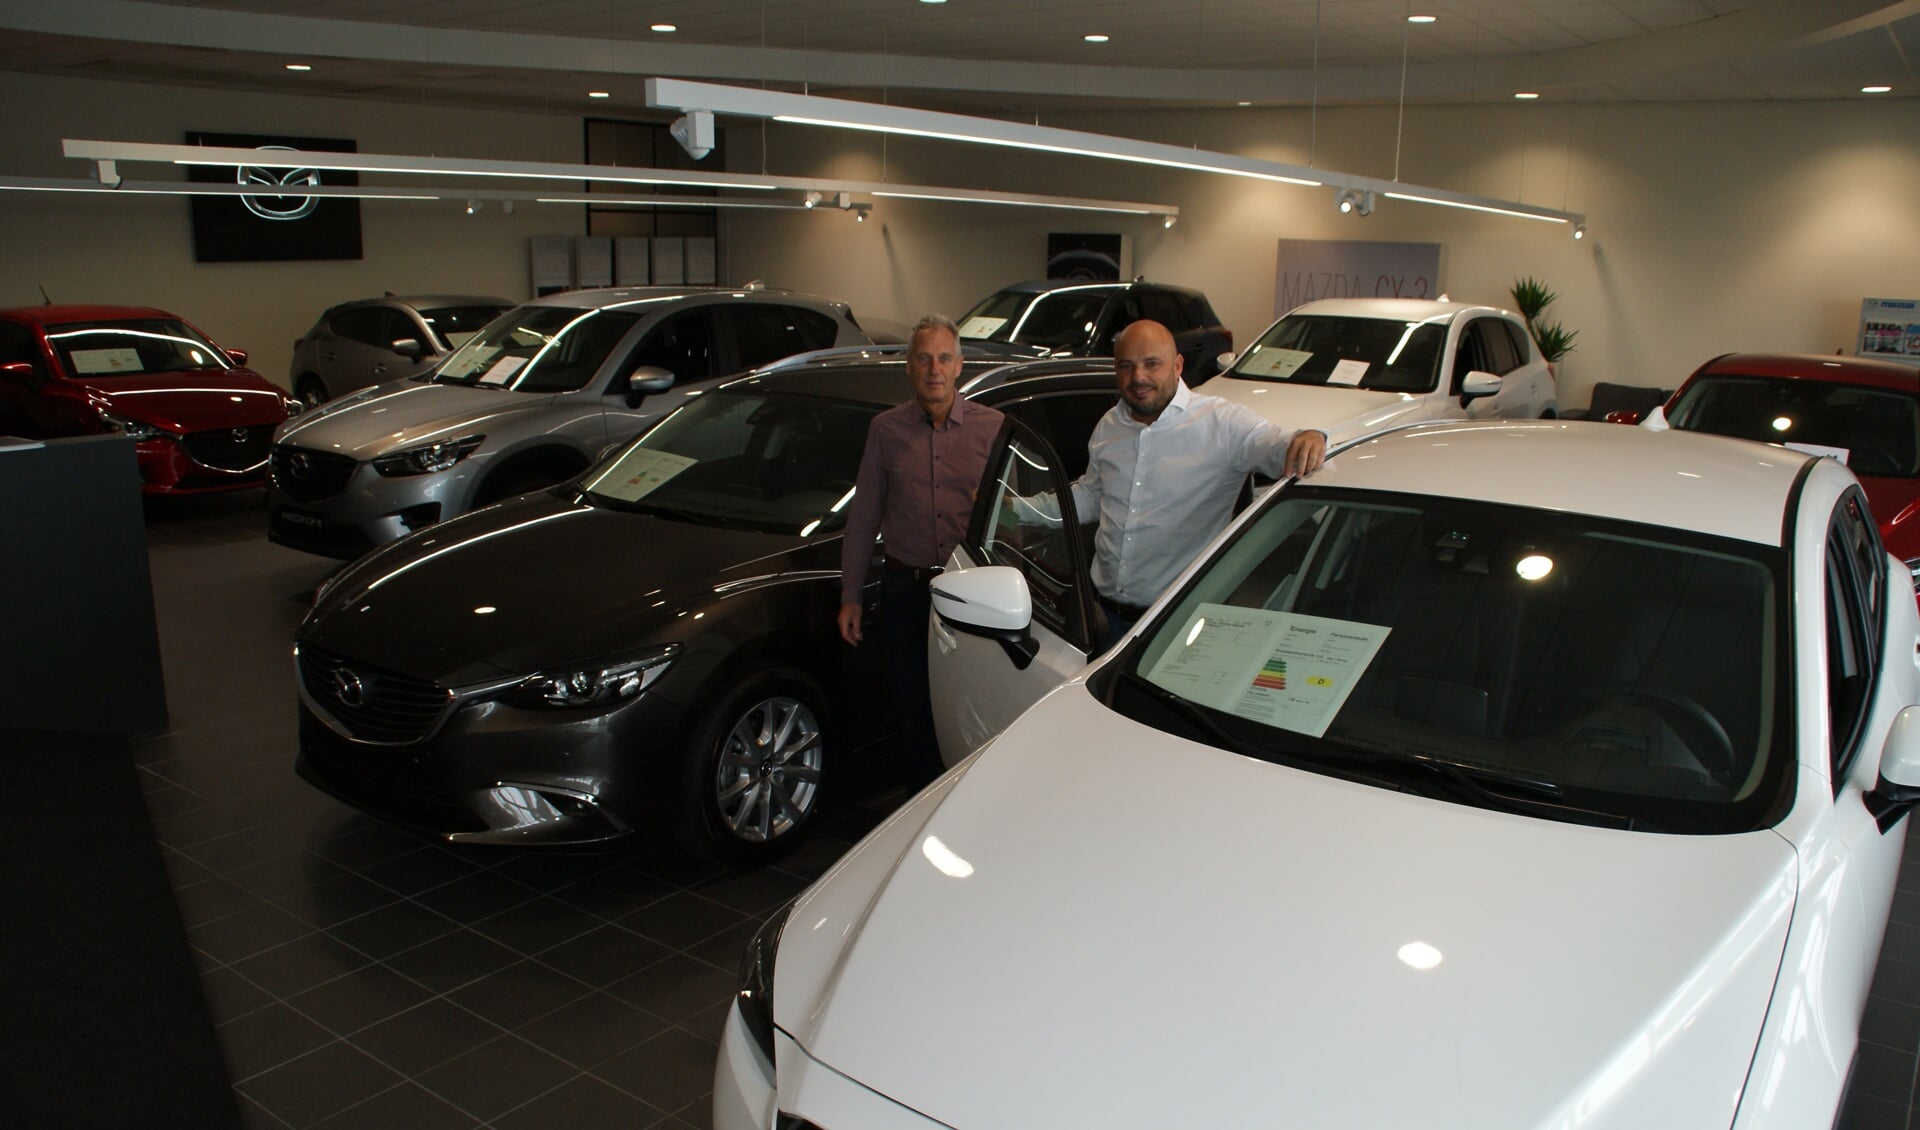 Directeur Dito Tomas Mollema (rechts) en verkoopadviseur Paul Staal in de showroom van Mazda Haagstad in Den Haag.